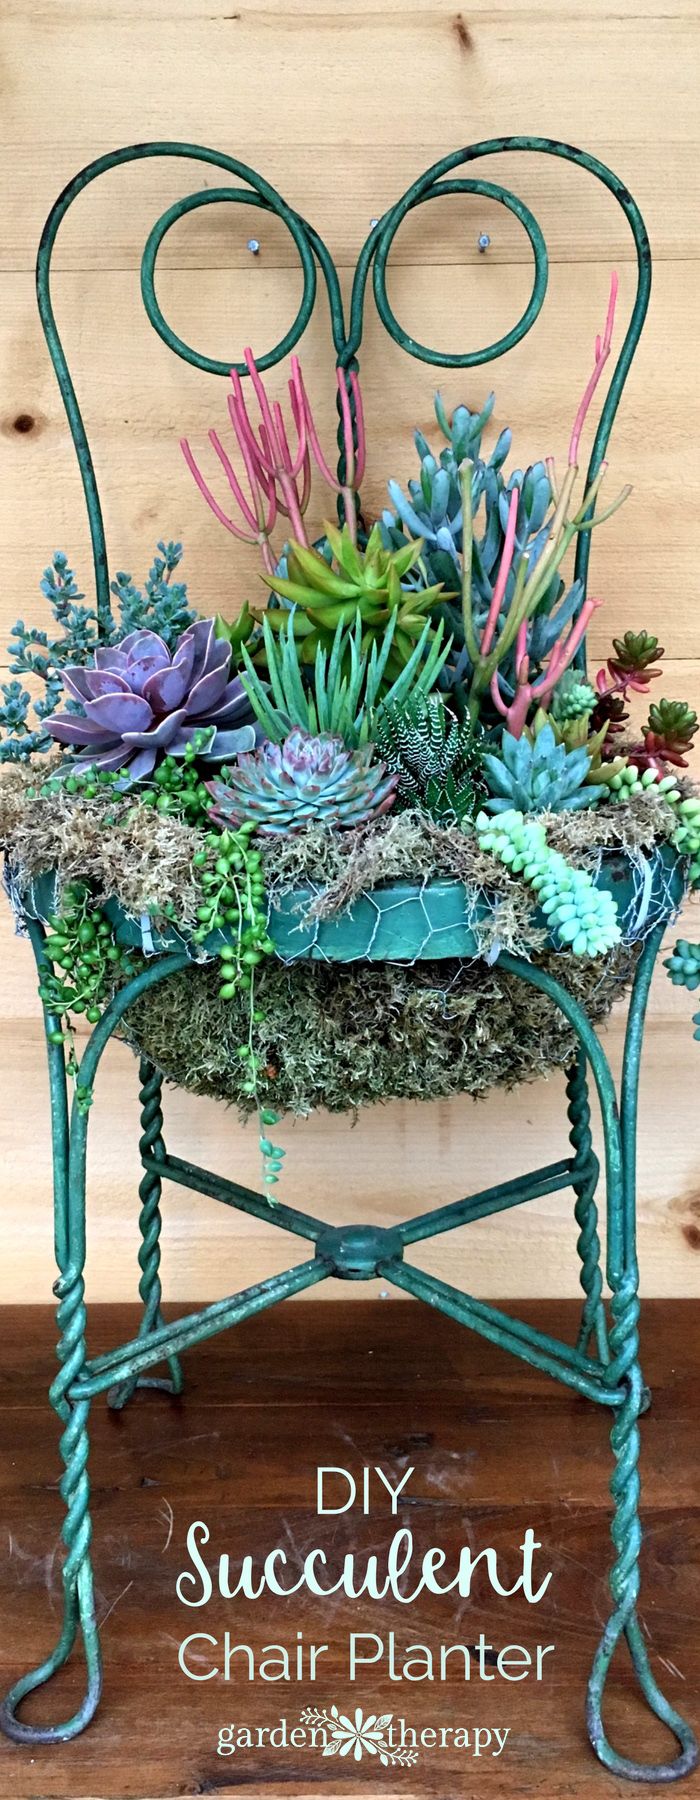 12.DIY Succulent Chair Planter